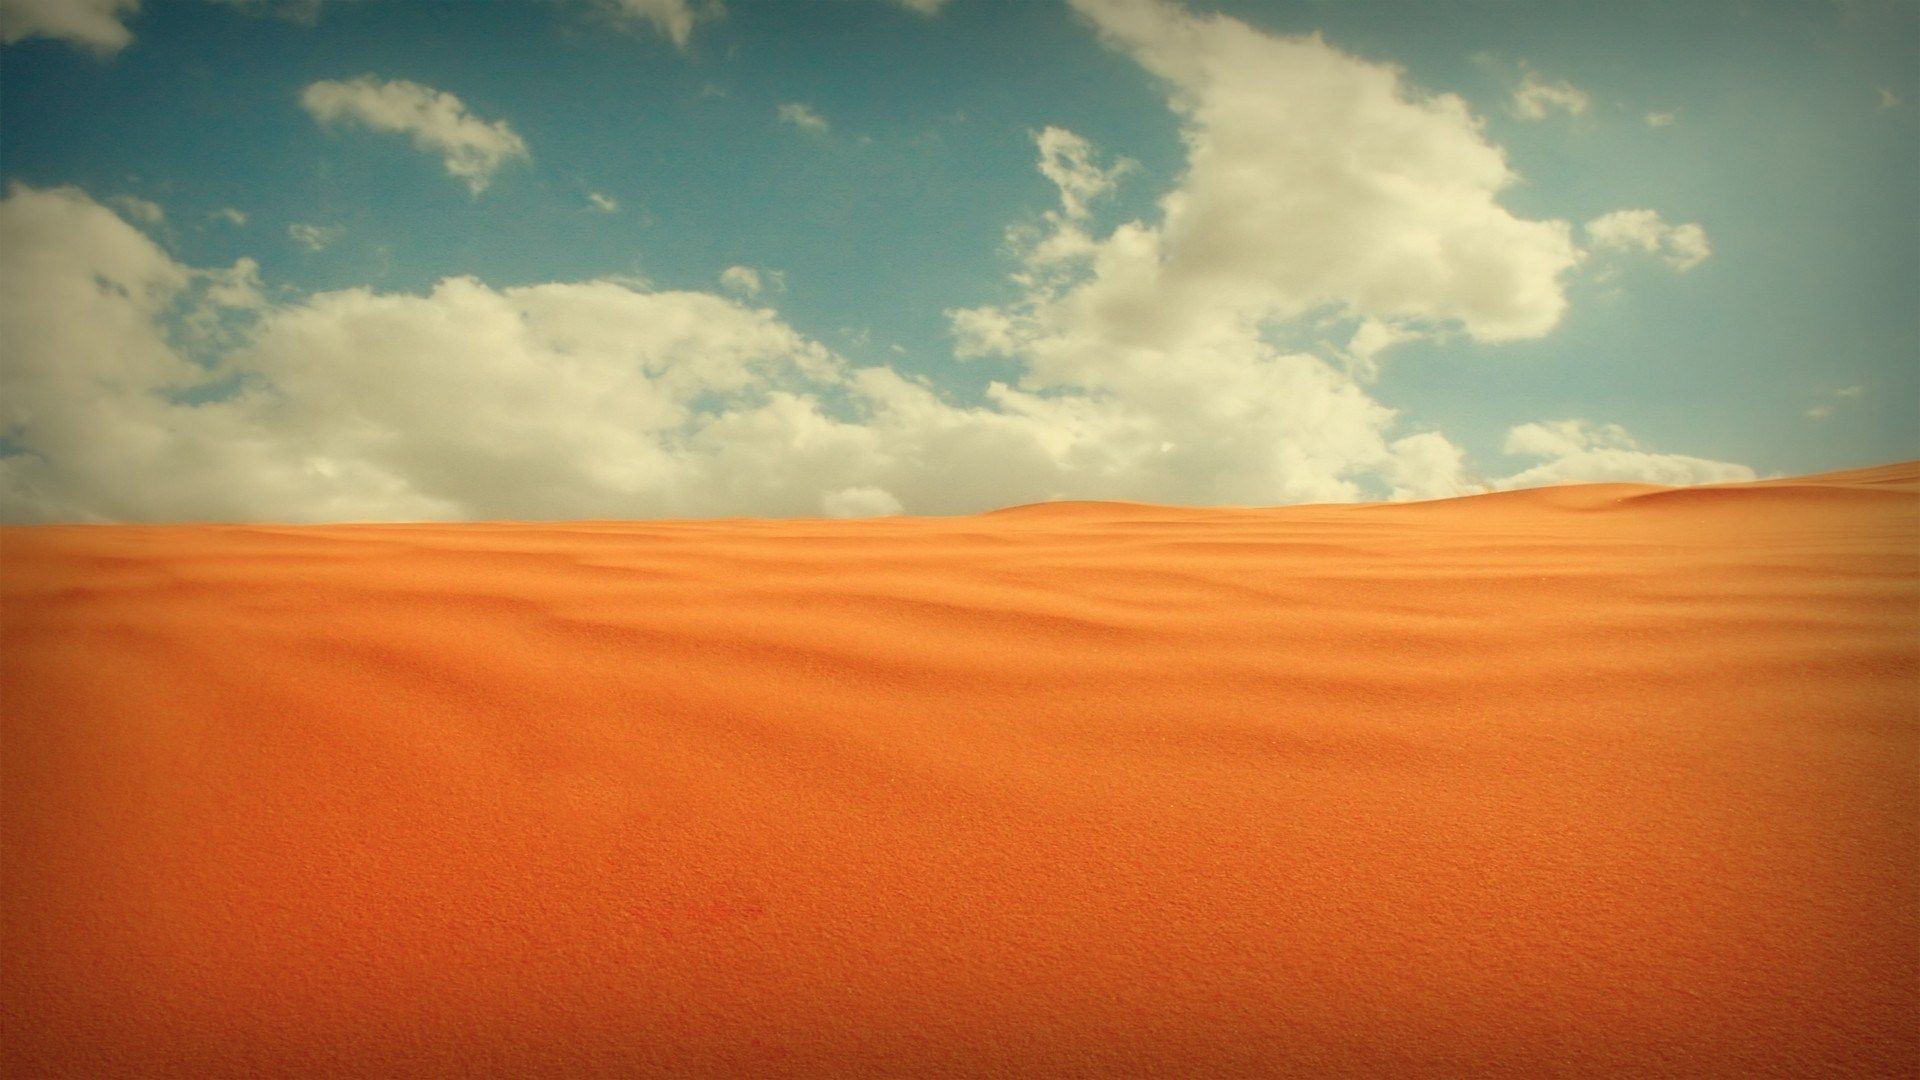 wallpaper image desert. Desert photography, Landscape